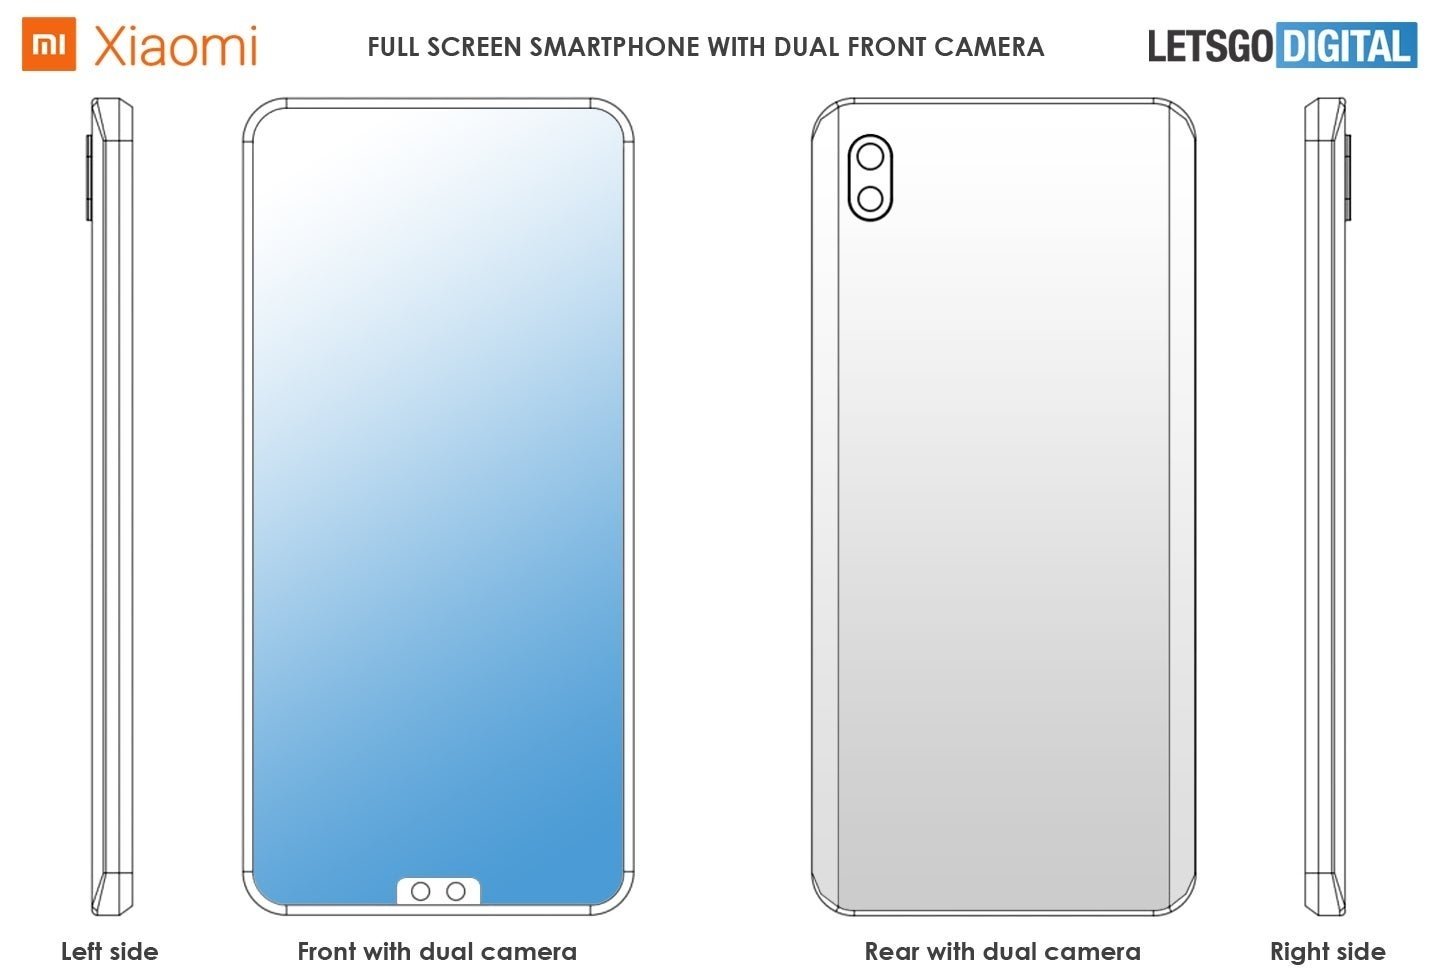 Una nueva patente de Xiaomi muestra un diseño todo pantalla con doble cámara inferior, ¿el nuevo Mi MIX?